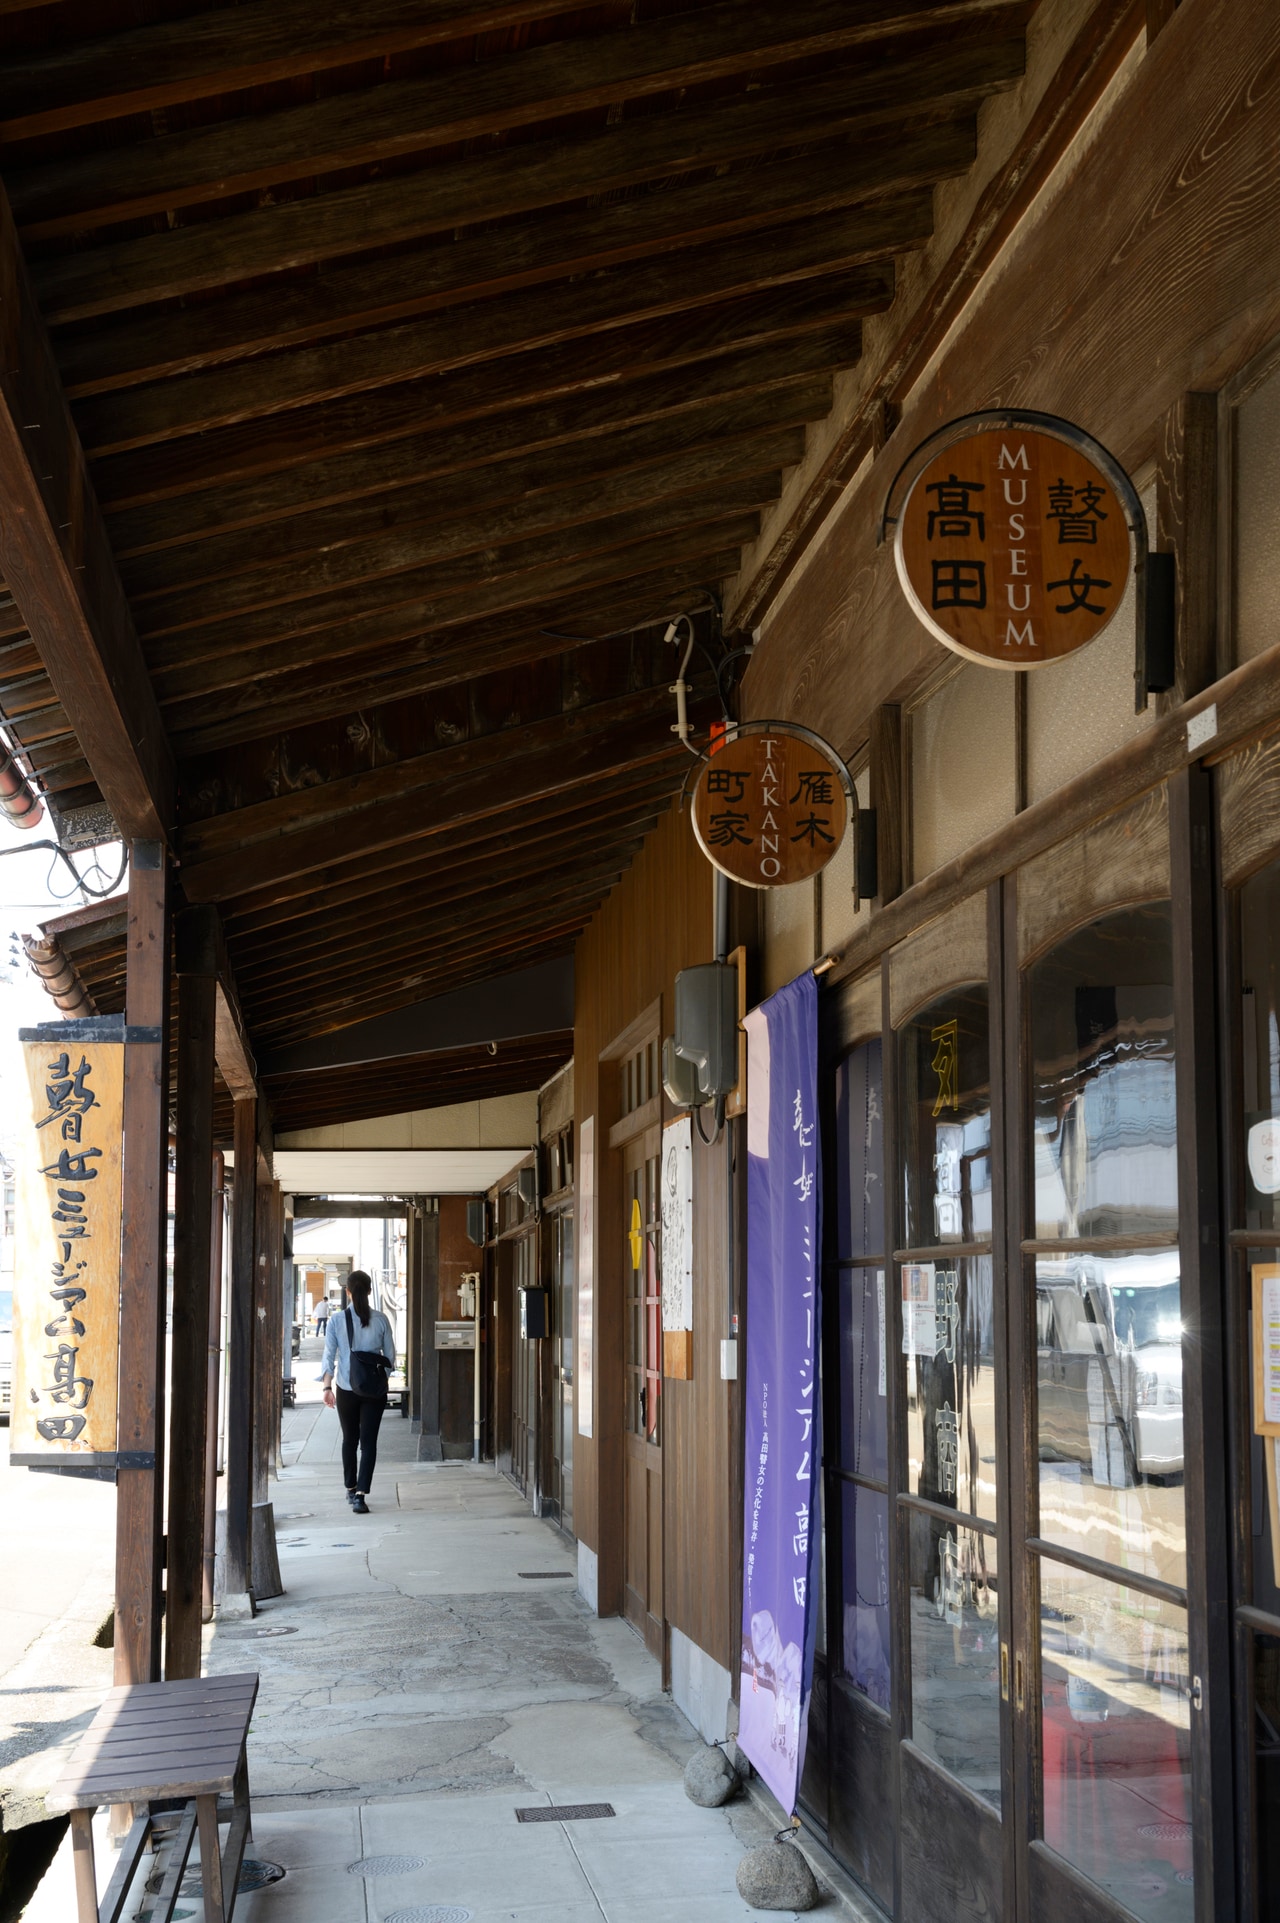 高田の雁木通りは、現在、アーケードを含めて総延長15kmほどあり、その長さは日本一だそう。